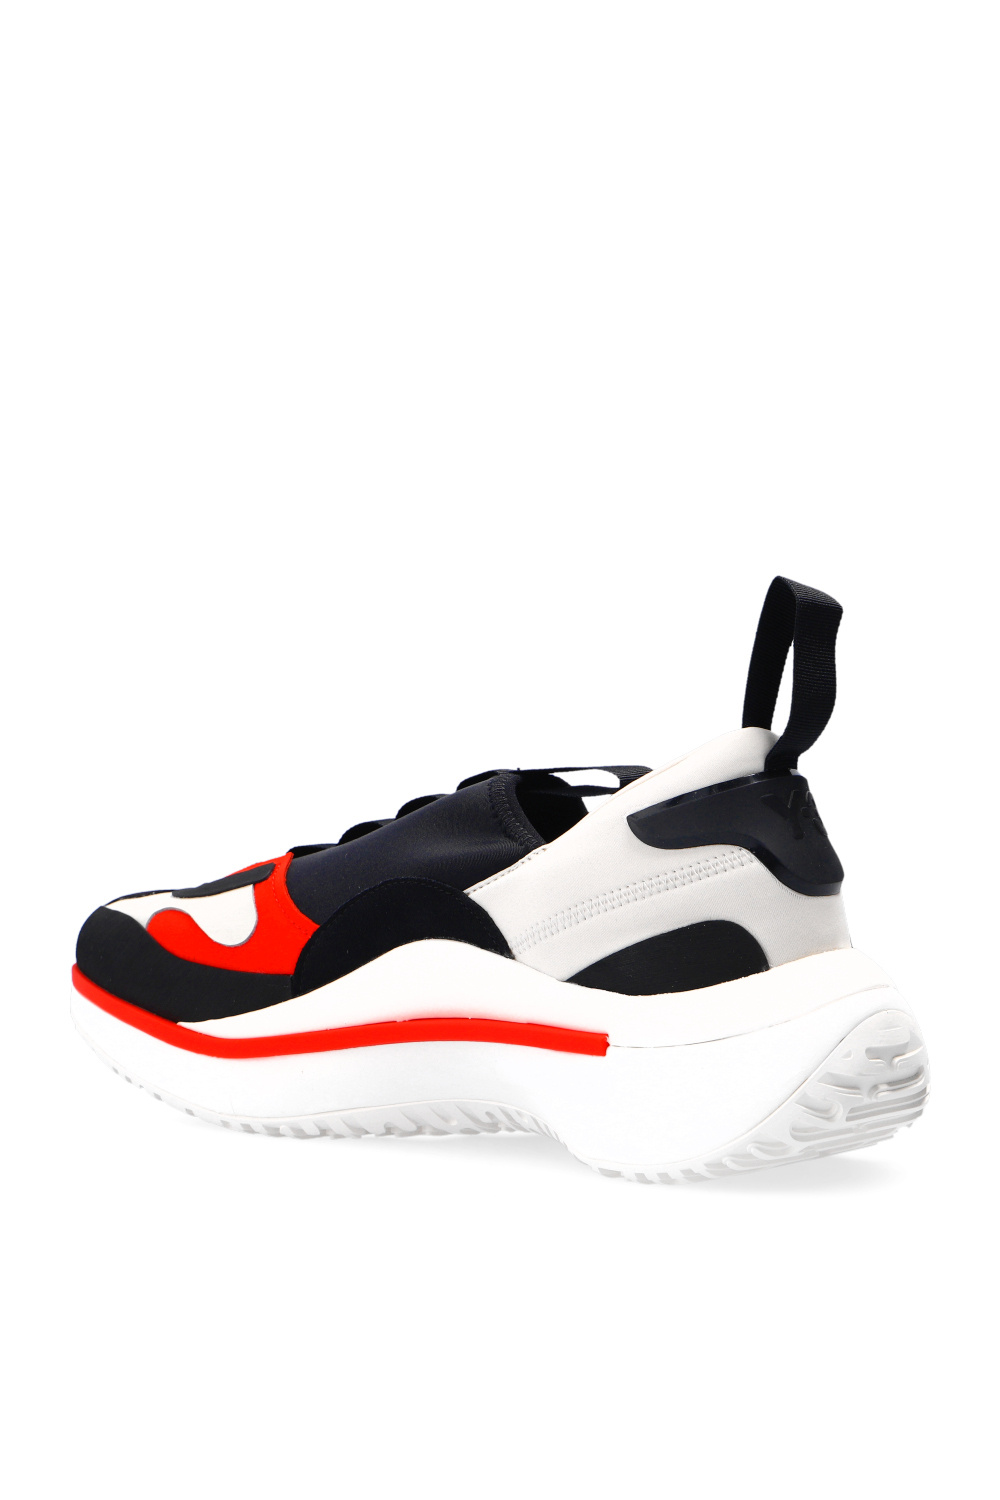 Knee High Boots DEEZEE WYL2849-1 Beige ‘Qisan Cozy’ sneakers